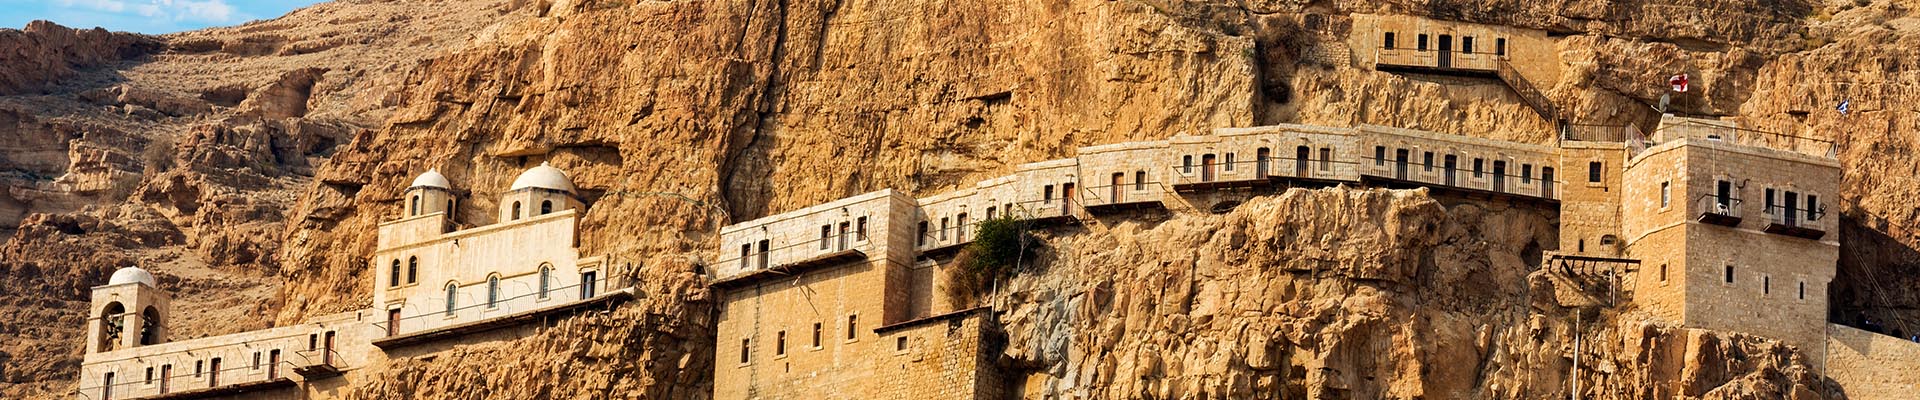 Viaje Privado Cristiano a Israel y Petra en 9 días